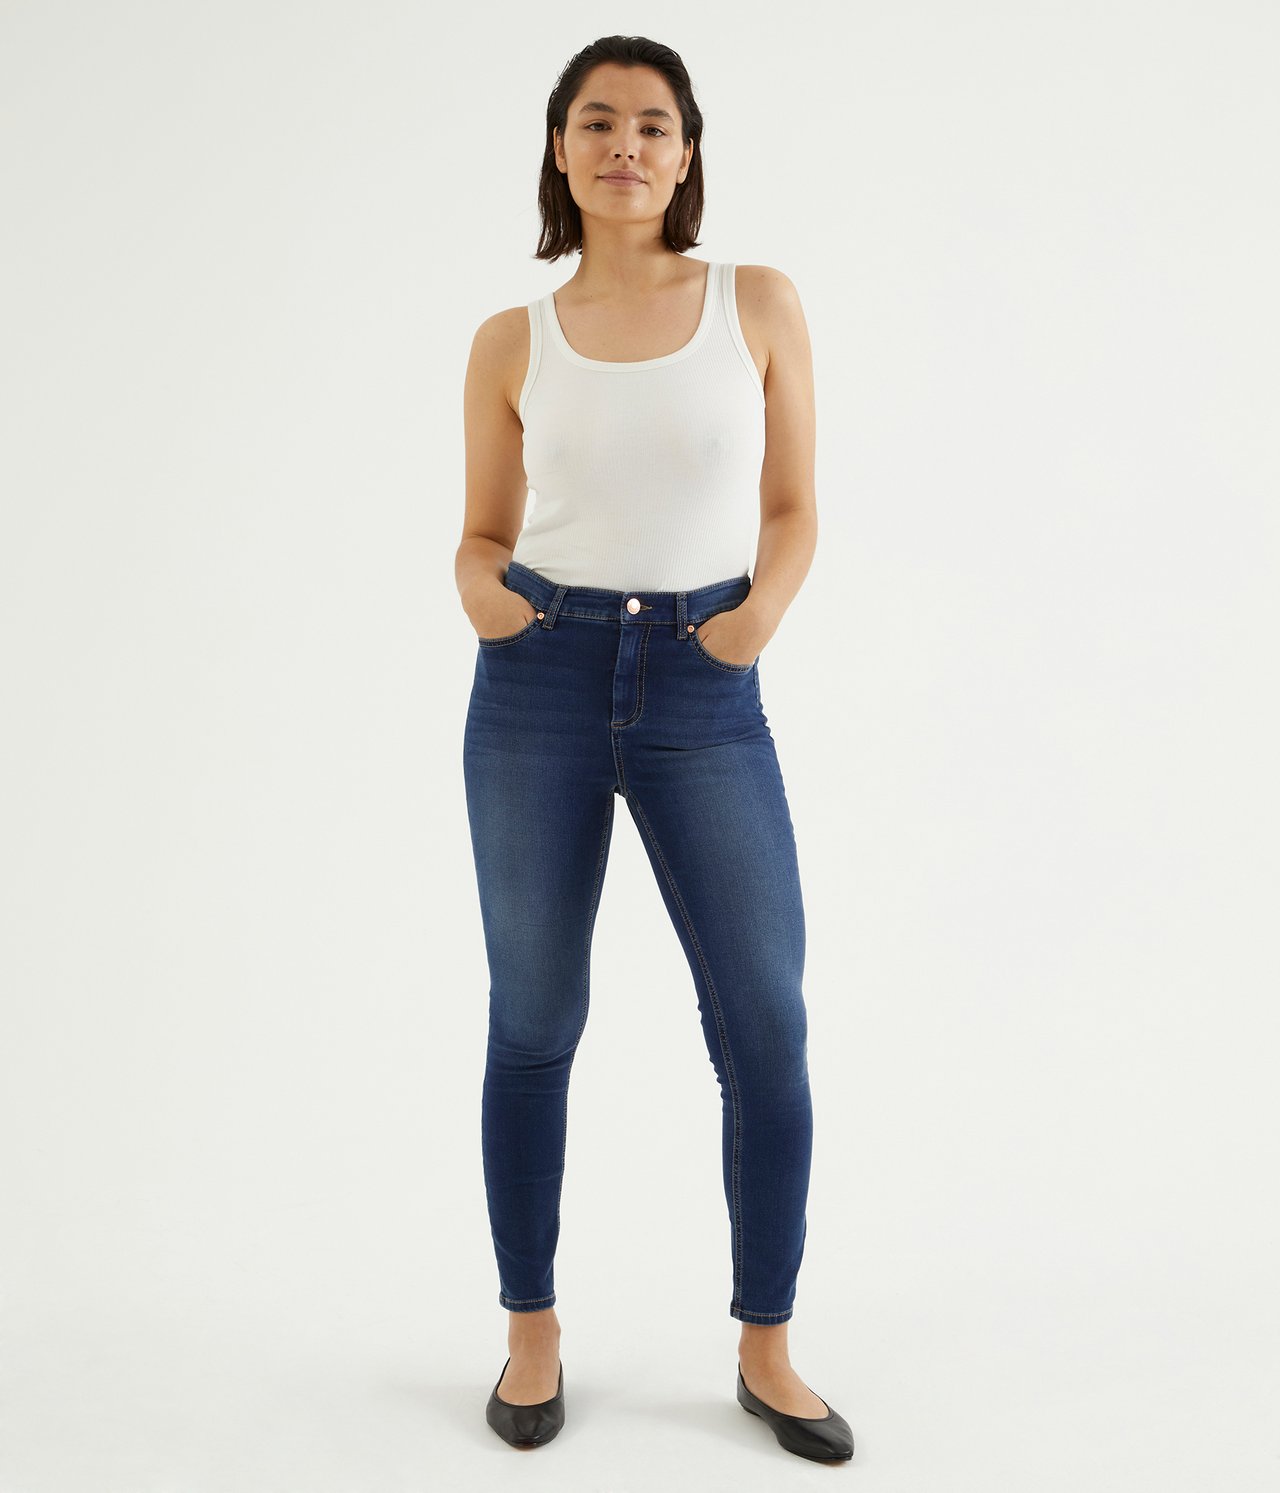 Super slim jeans short leg - Tumma denimi - 1